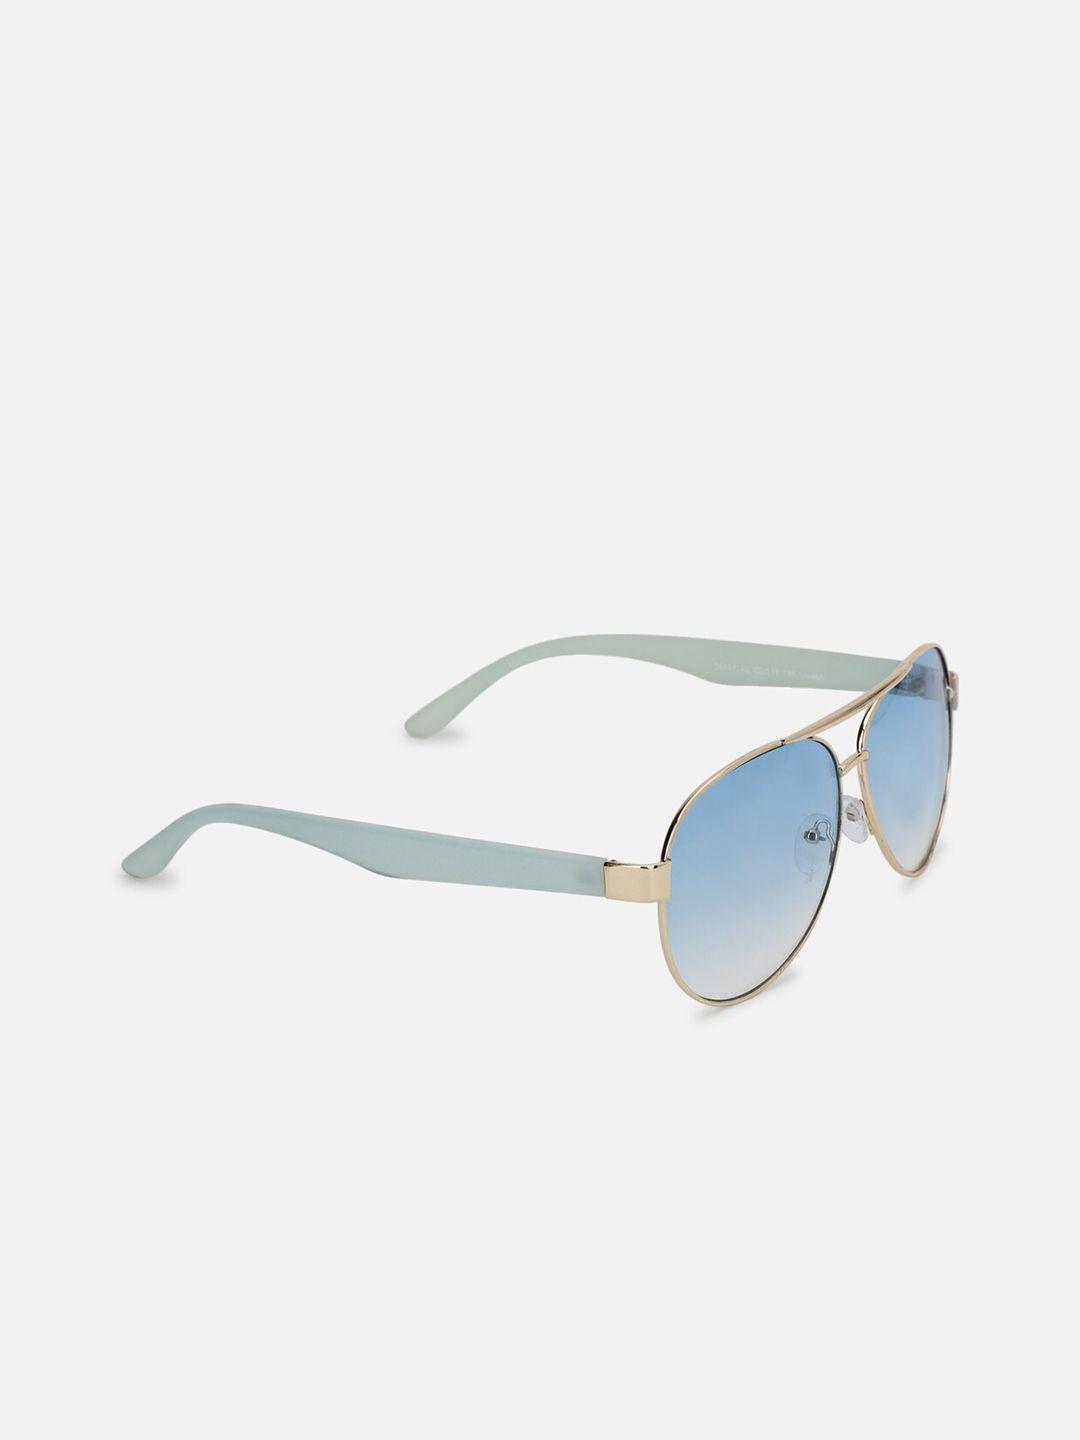 forever-21-women-blue-lens-&-gold-toned-aviator-sunglasses